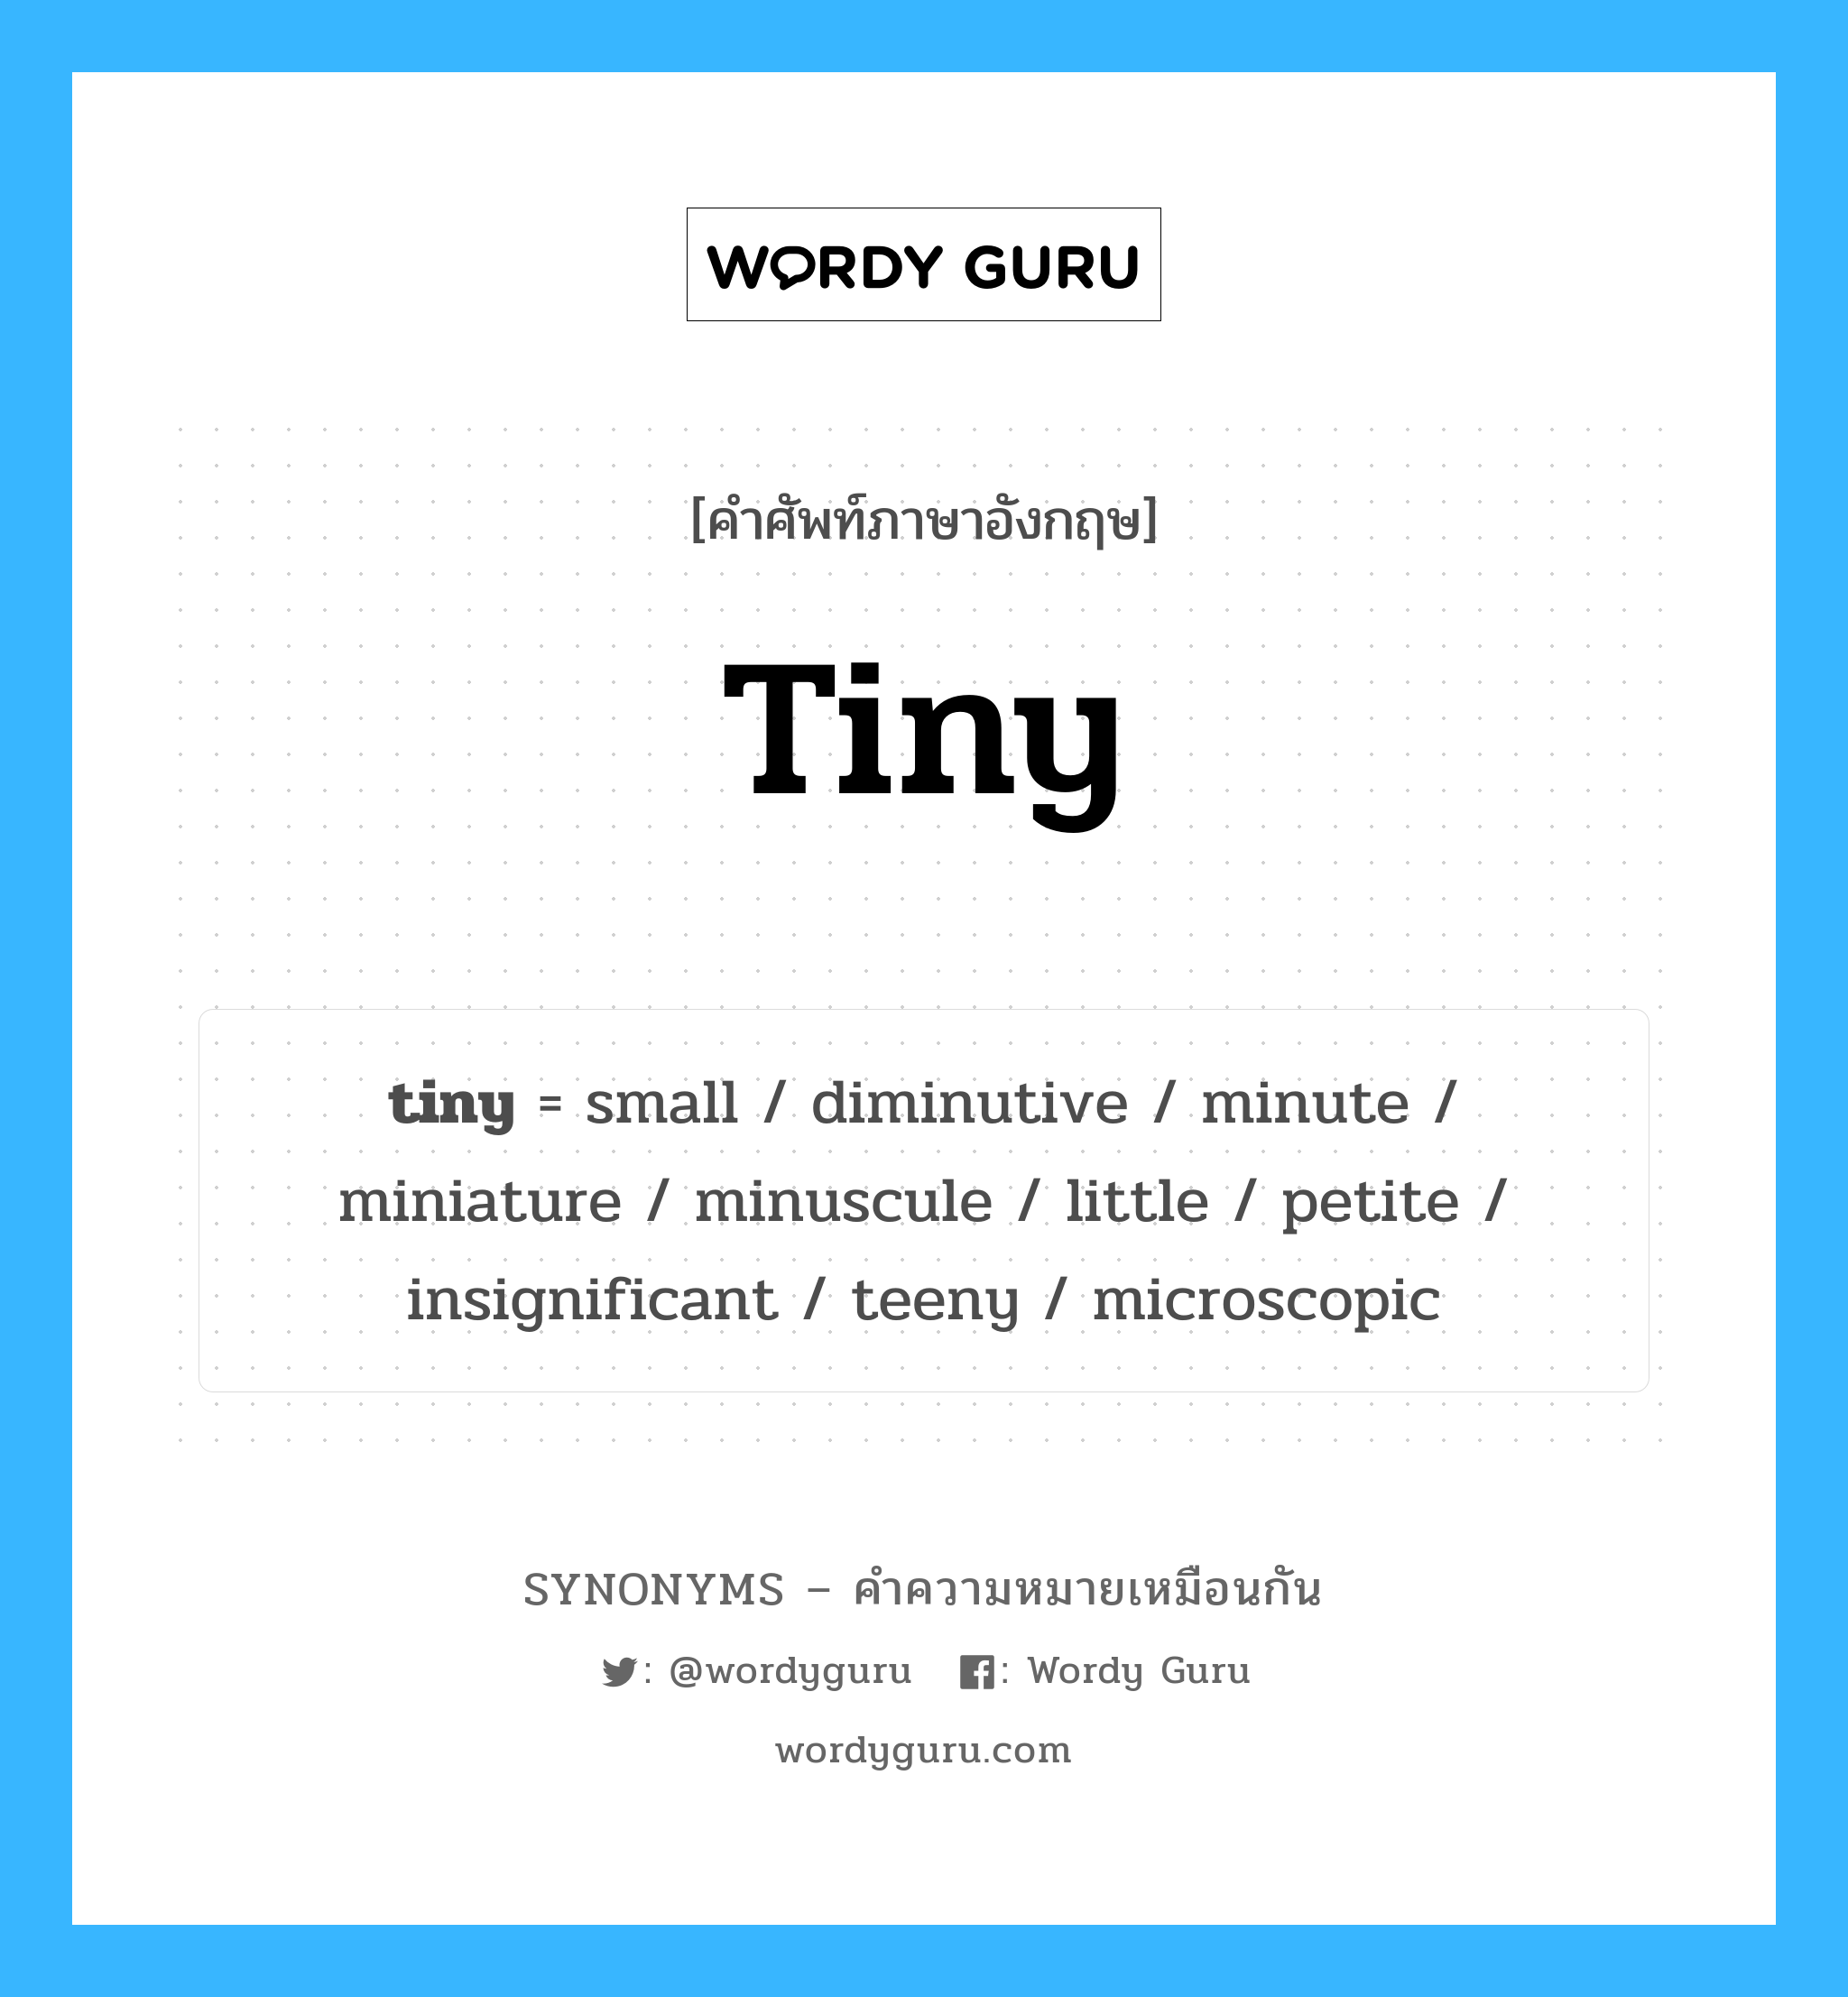 tiny เป็นหนึ่งใน small และมีคำอื่น ๆ อีกดังนี้, คำศัพท์ภาษาอังกฤษ tiny ความหมายคล้ายกันกับ small แปลว่า ขนาดเล็ก หมวด small